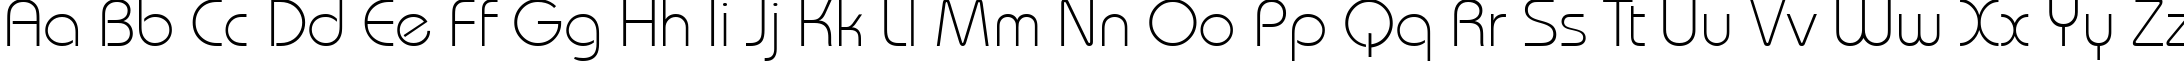 Пример написания английского алфавита шрифтом BauhausLightCTT